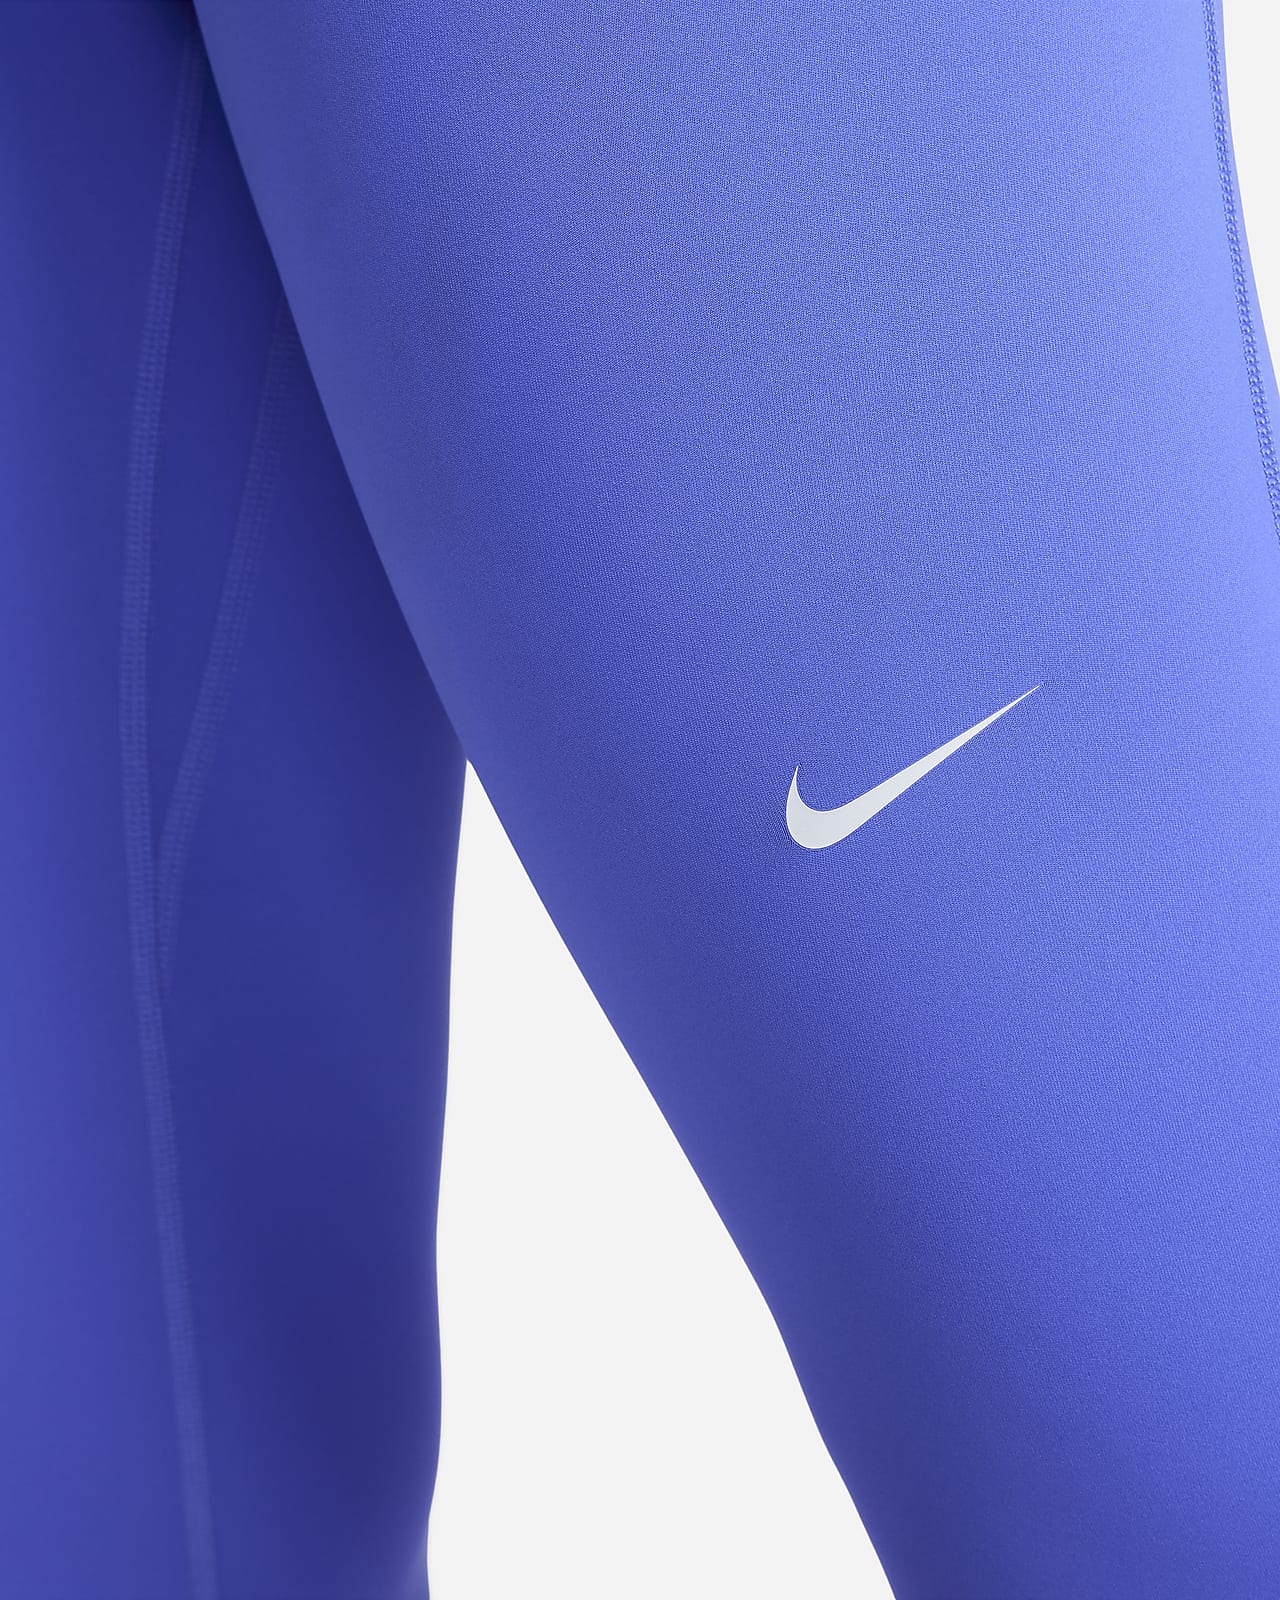 Nike Pro Damen-Leggings mit mittelhohem Bund und Grafik. Nike LU